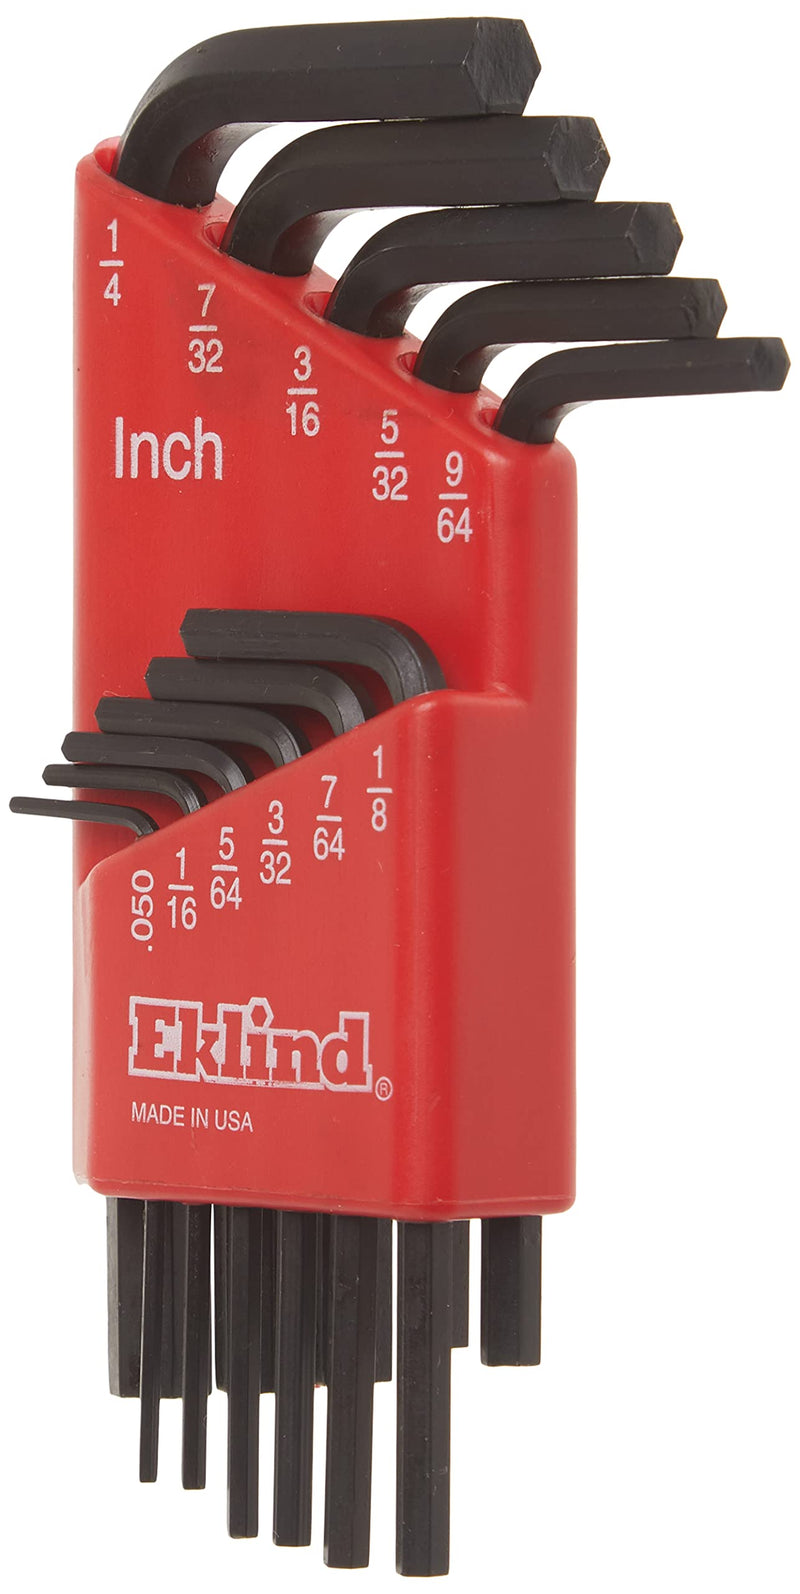 [Australia - AusPower] - EKLIND 10111 Hex-L Key allen wrench - 11pc set SAE Inch Sizes .050-1/4 Short series 